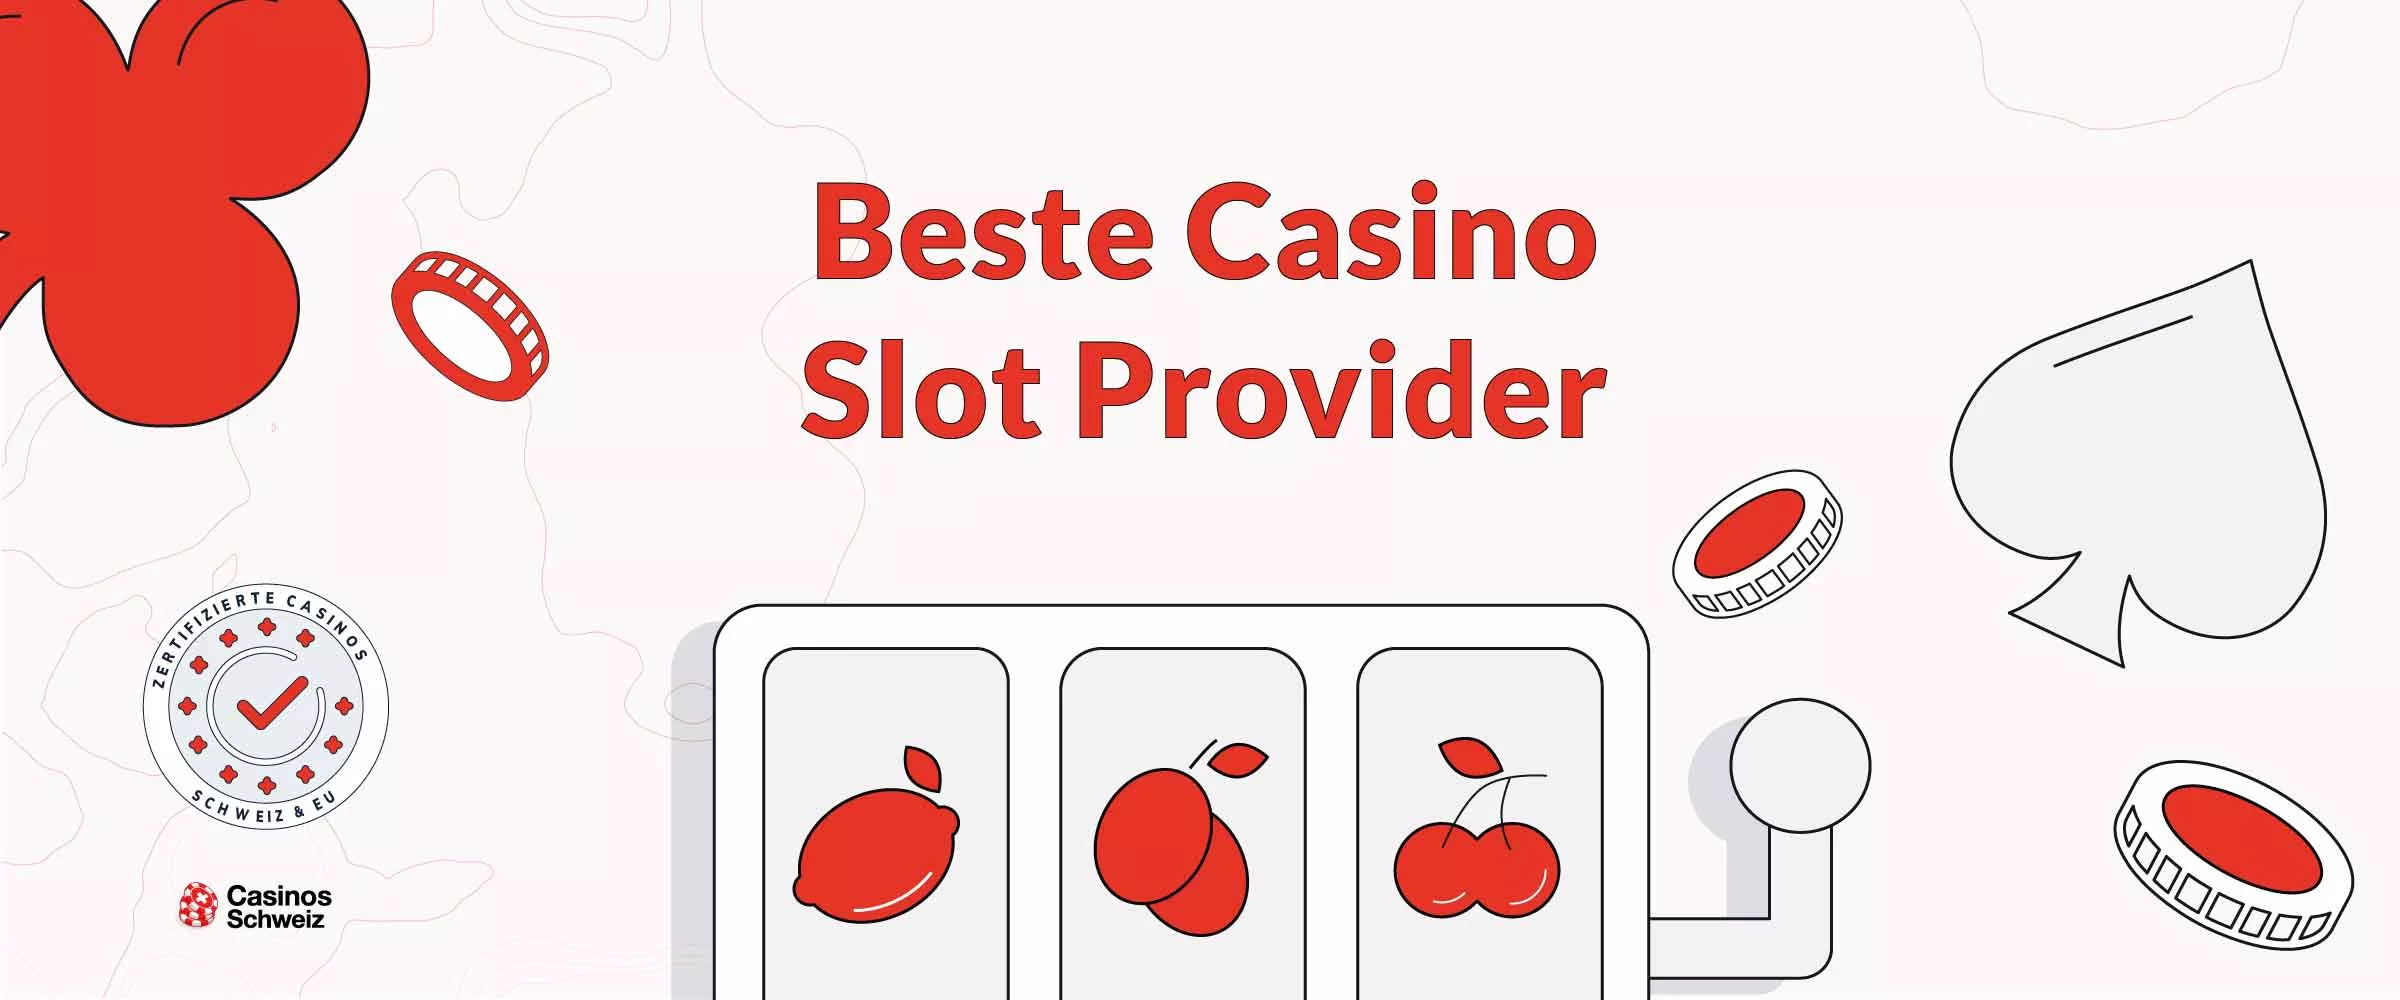 Beste Casino Slot Provider